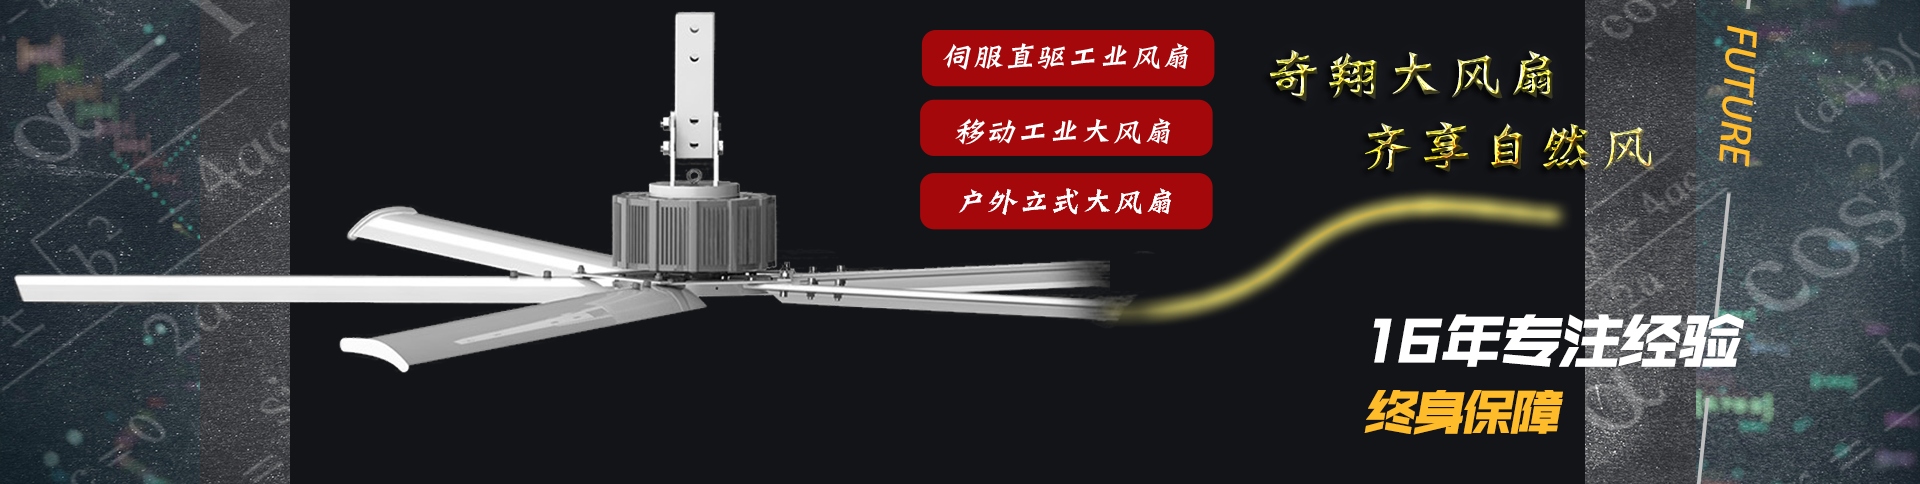 工业风扇-节能工业风扇-【广州奇翔】厂家直销,0维护